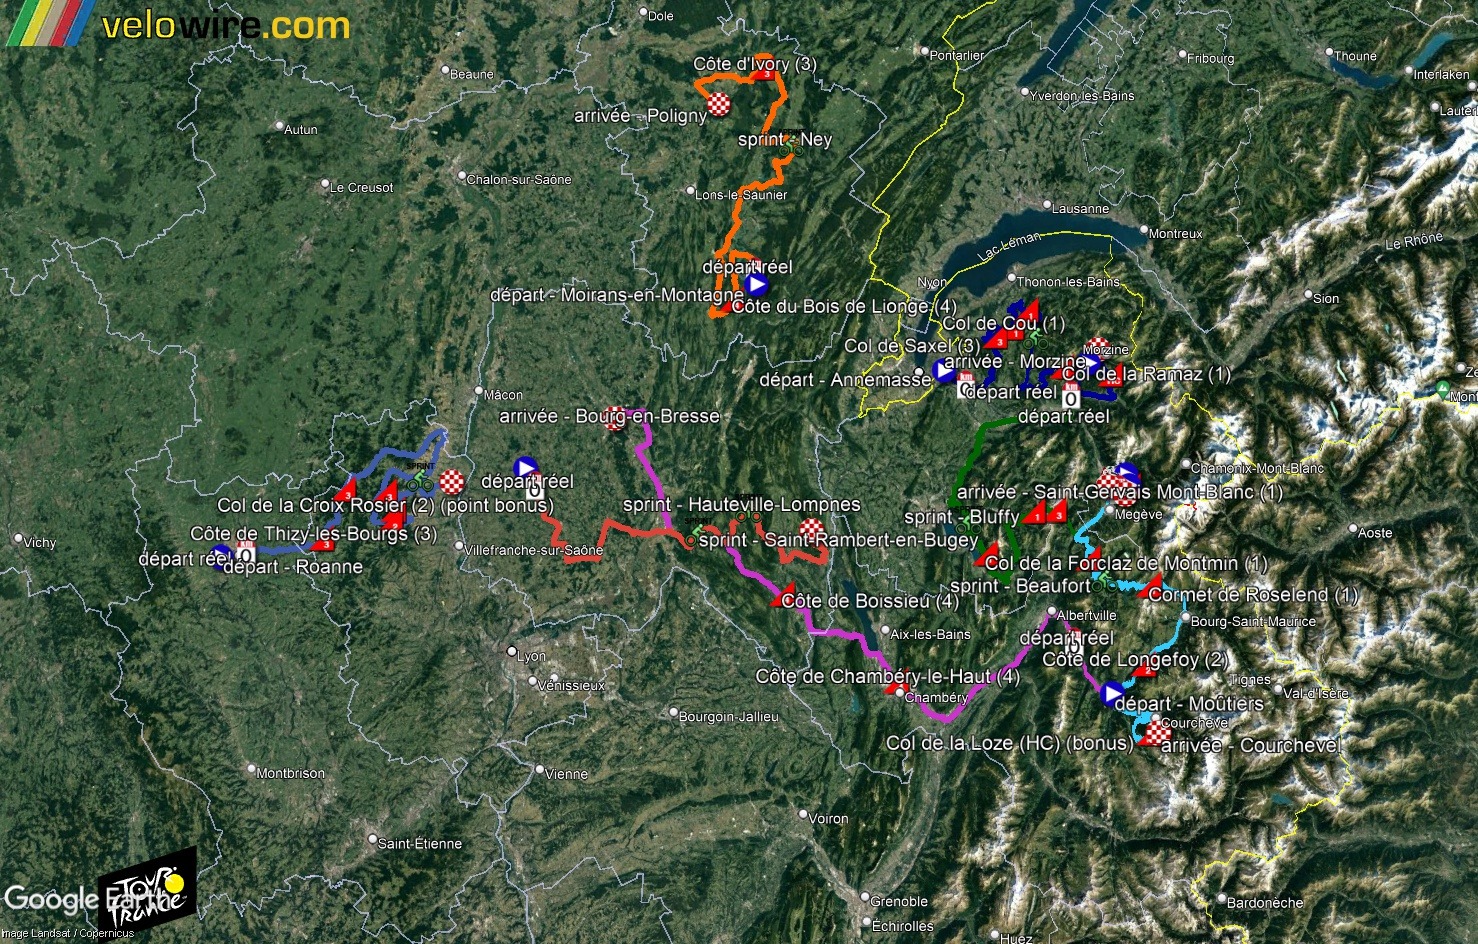 [KMZ] Le parcours du Tour de France 2023 dans Google Earth (par velowire.com) Tsge4307